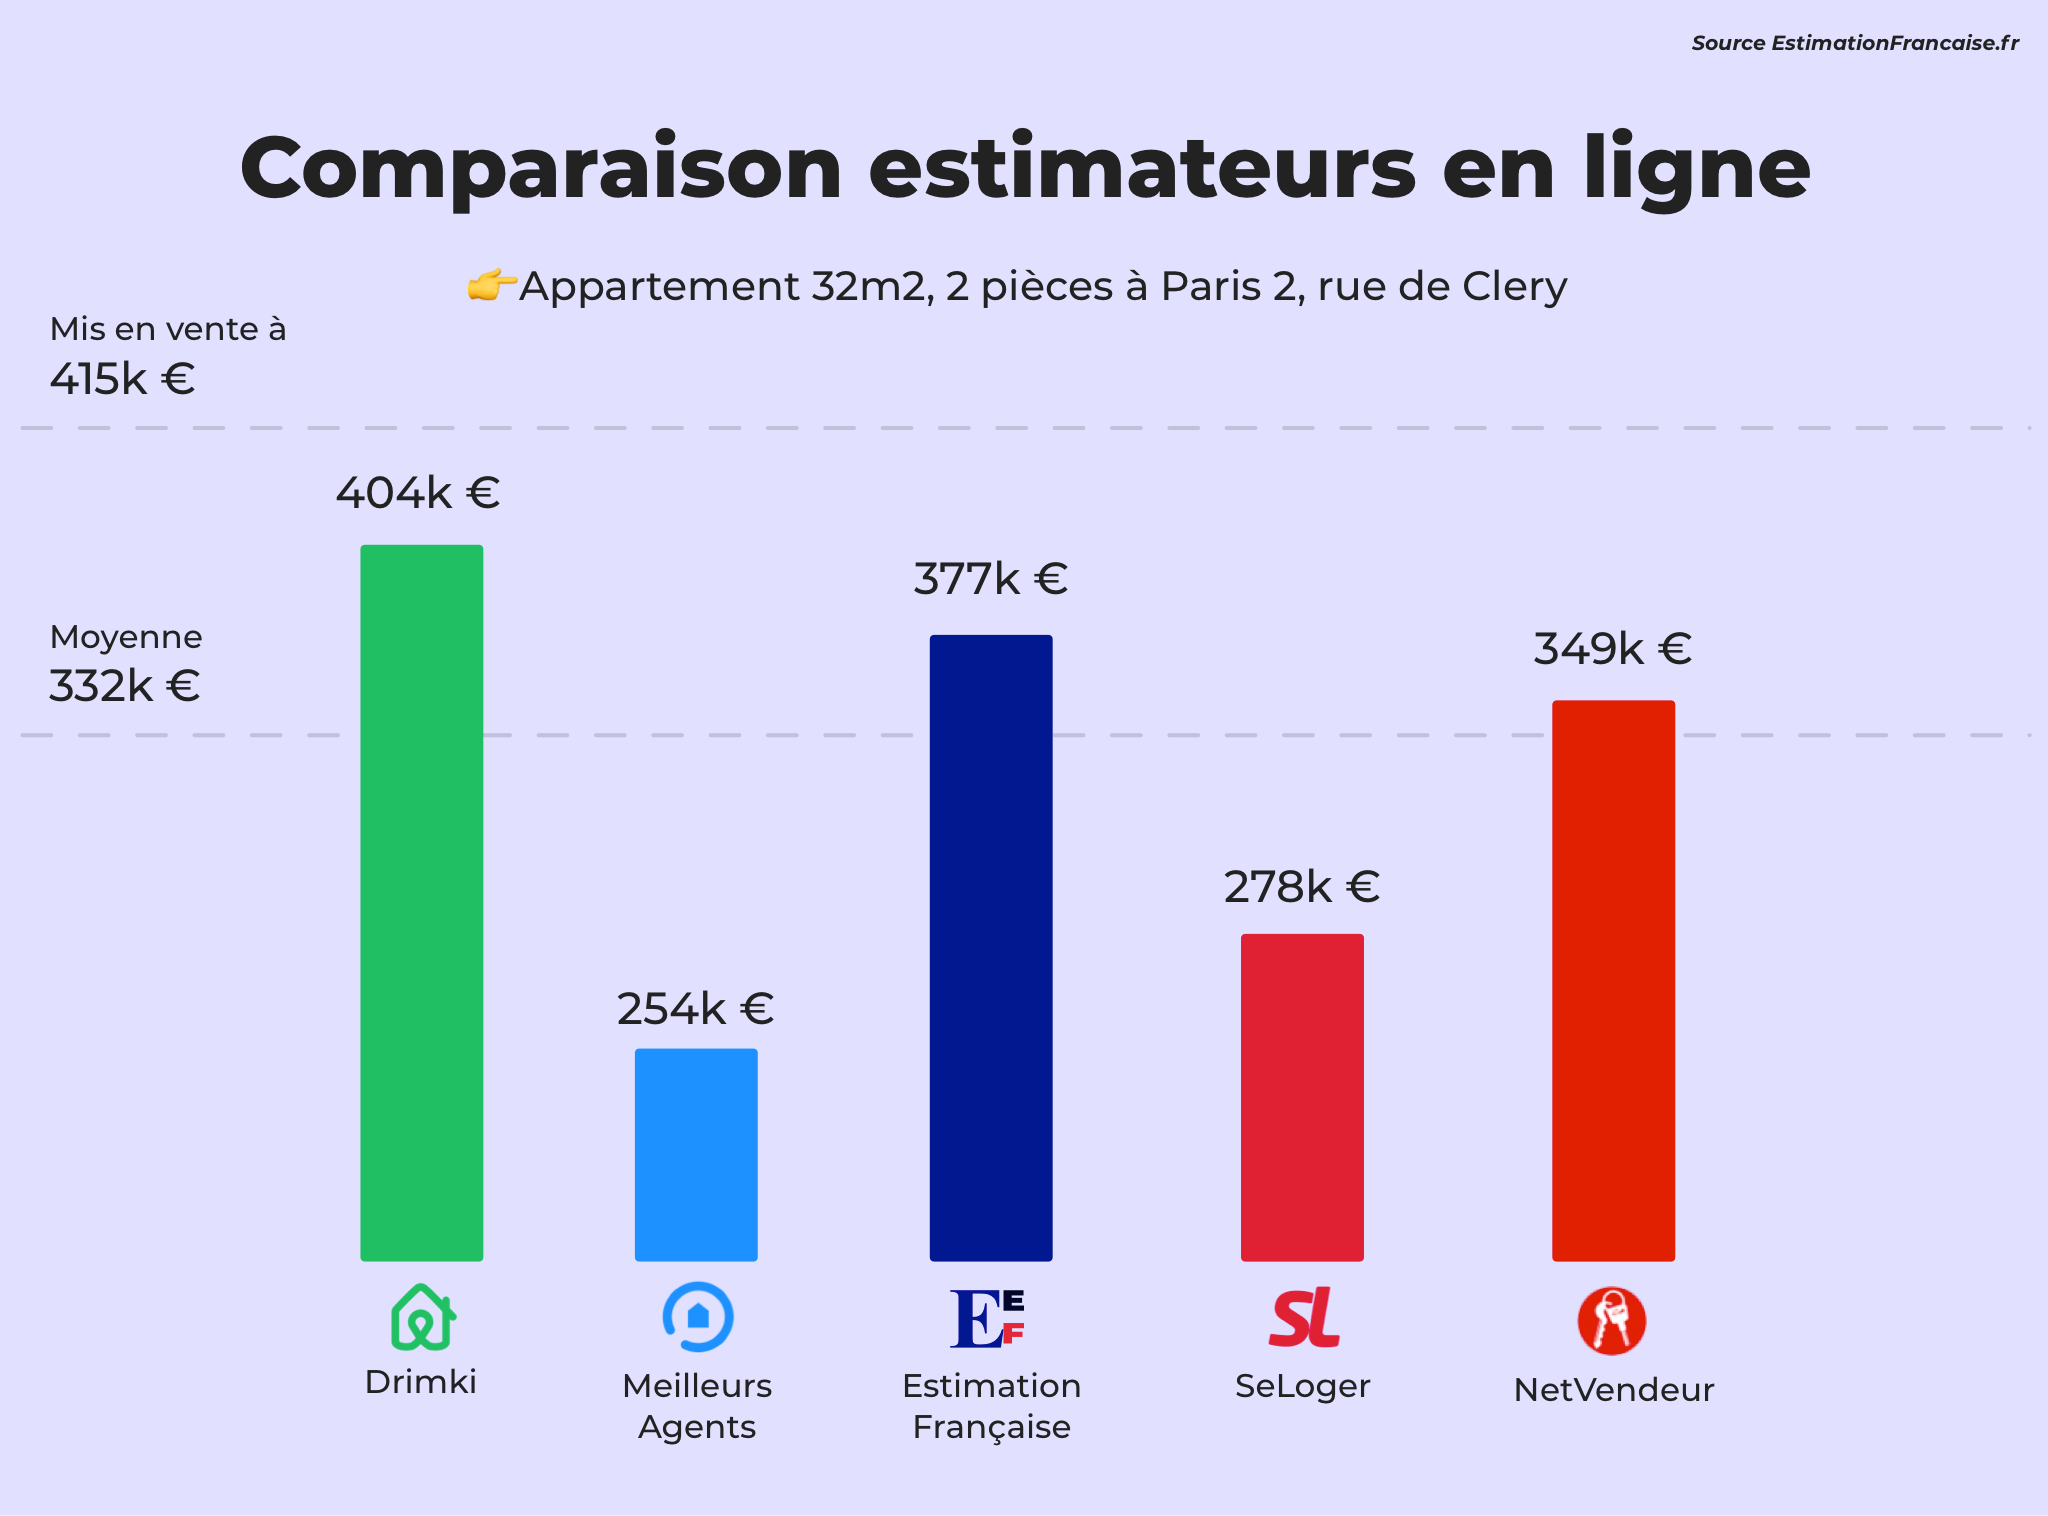 Drimki estimation comparaison pour un appartement à Paris 2